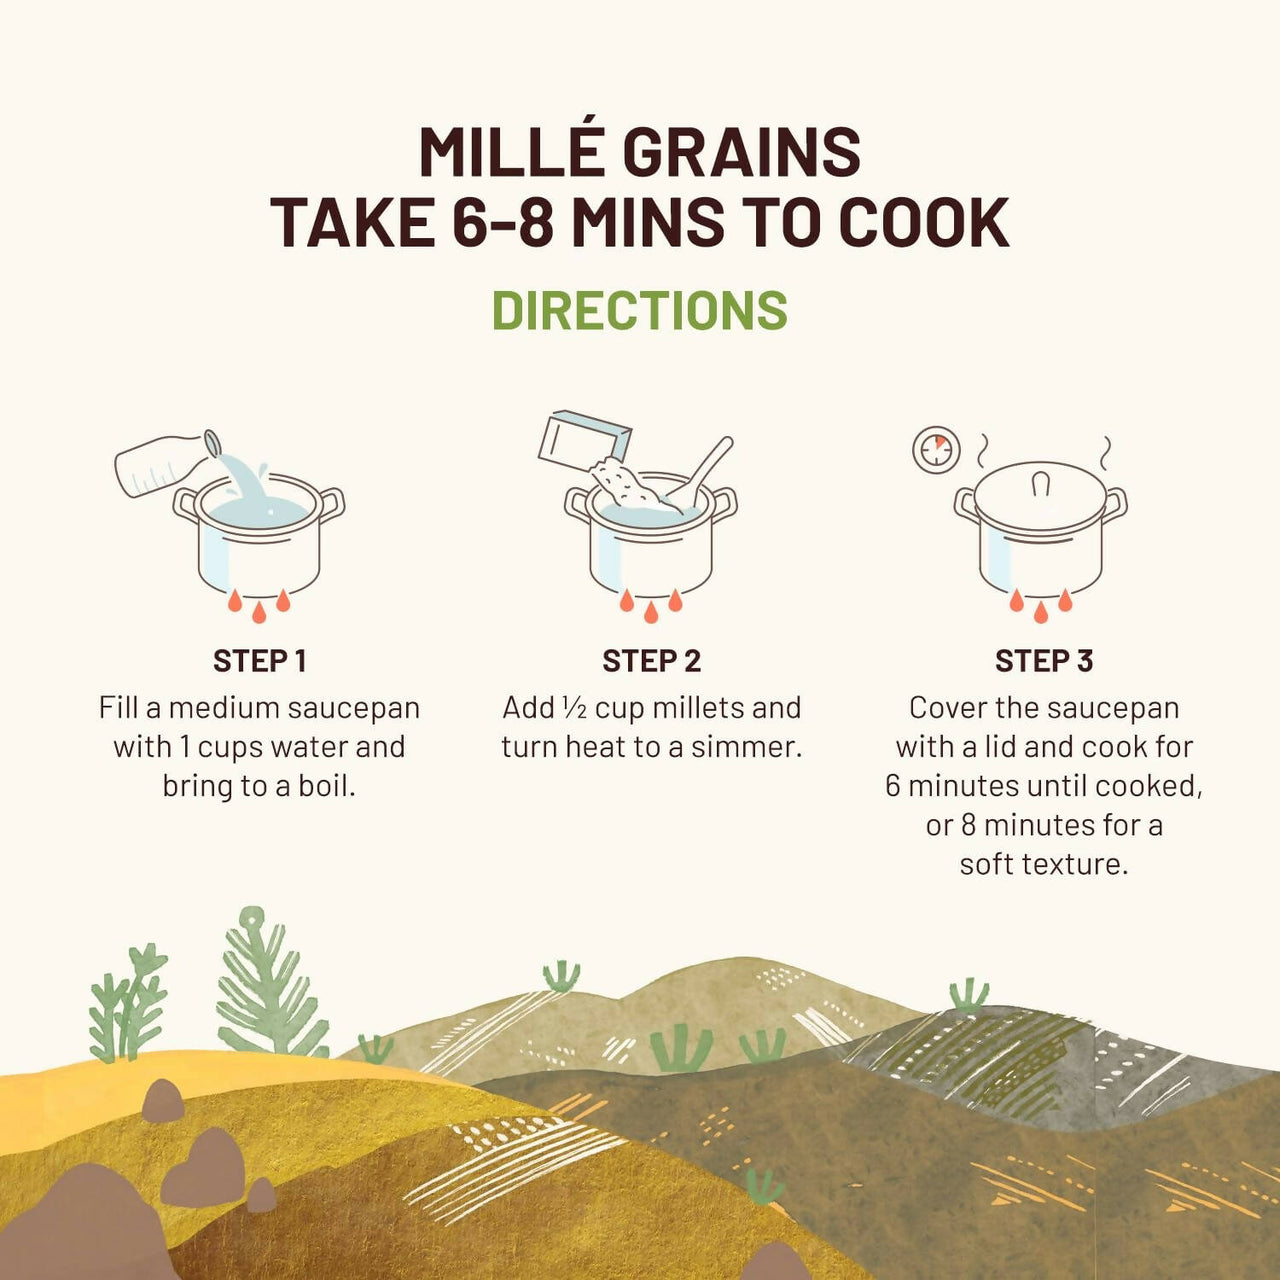 Mille Little Millet Whole Grain - Distacart